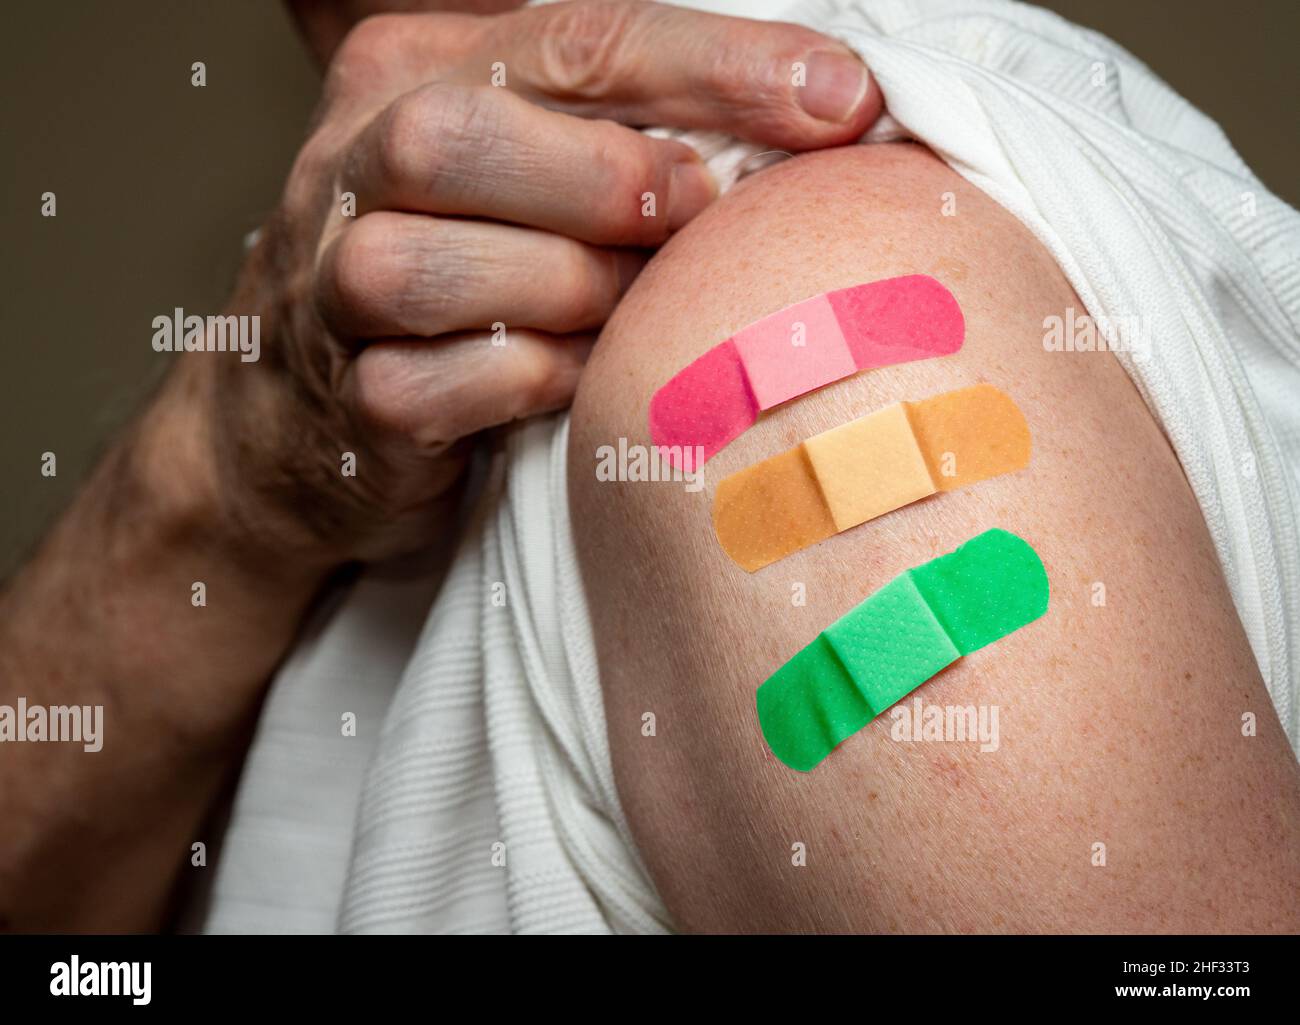 Manchon d'homme caucasien âgé pour montrer le troisième vaccin de rappel contre le coronavirus dans l'épaule.Concept avec trois bandages séparés pour les prises de vue Banque D'Images